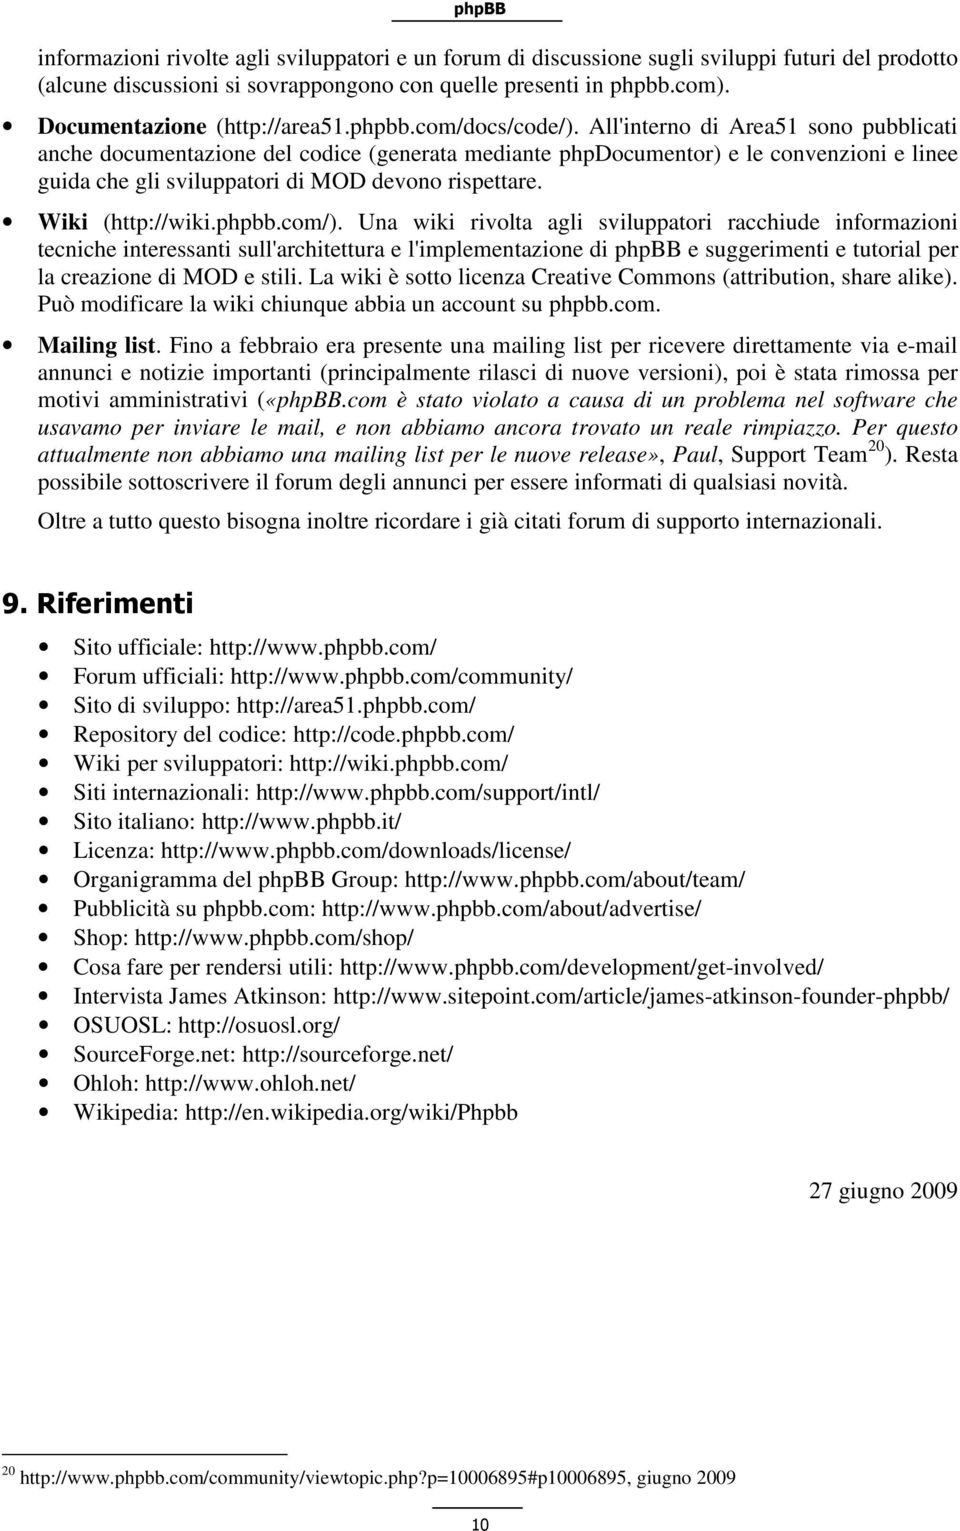 All'interno di Area51 sono pubblicati anche documentazione del codice (generata mediante phpdocumentor) e le convenzioni e linee guida che gli sviluppatori di MOD devono rispettare. Wiki (http://wiki.